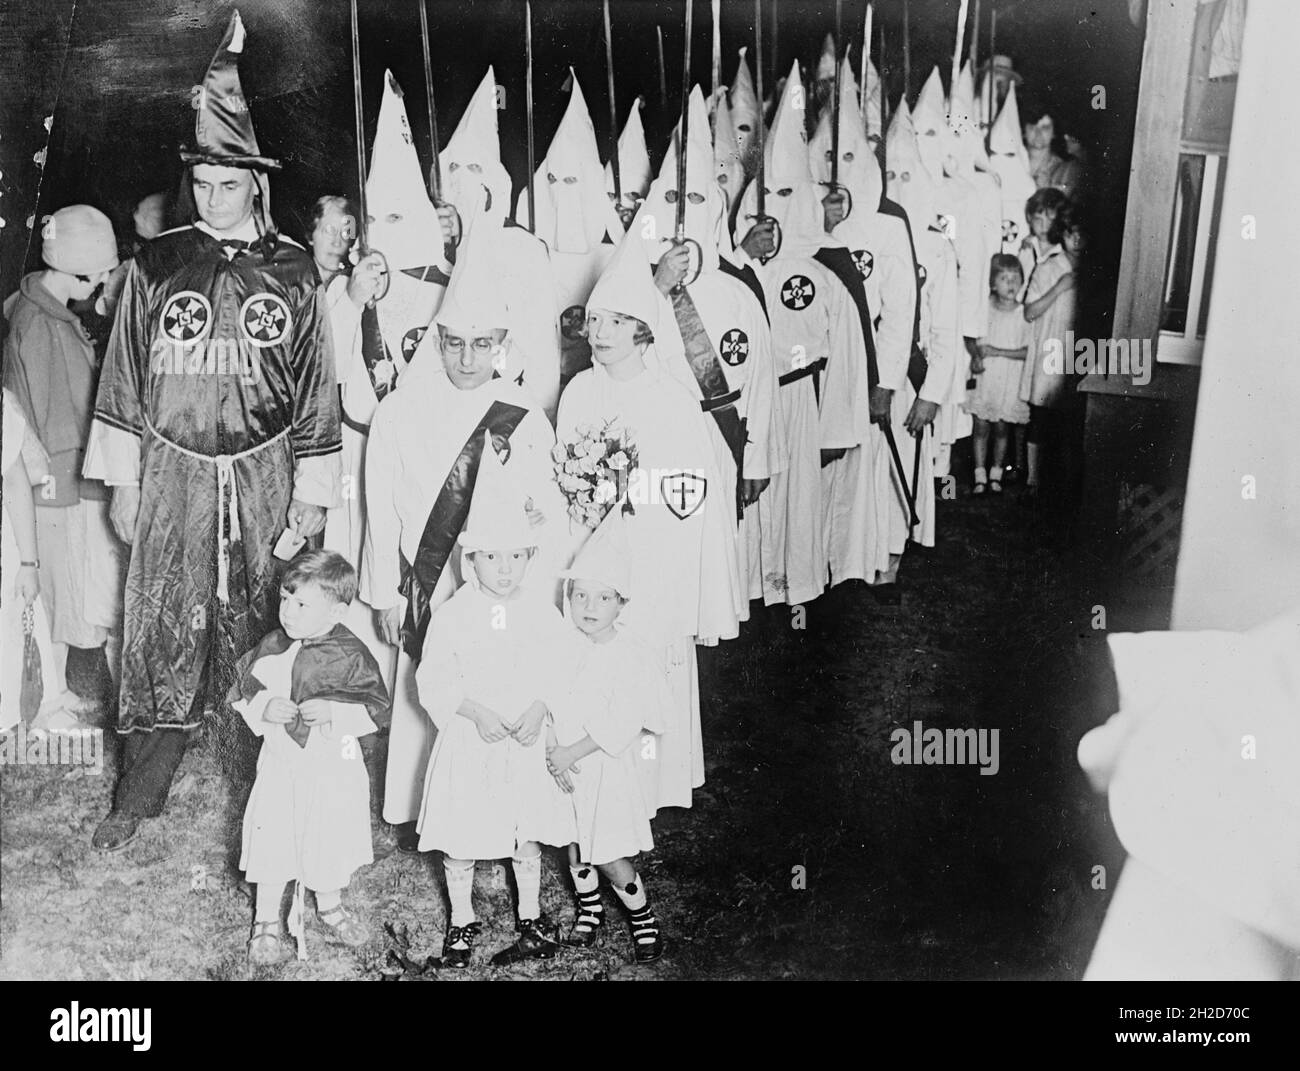 Foto d'epoca del 1924 che mostra i membri del Ku Klux Klan che partecipano a un matrimonio con bambini piccoli vestiti con abiti e cappe klan Foto Stock